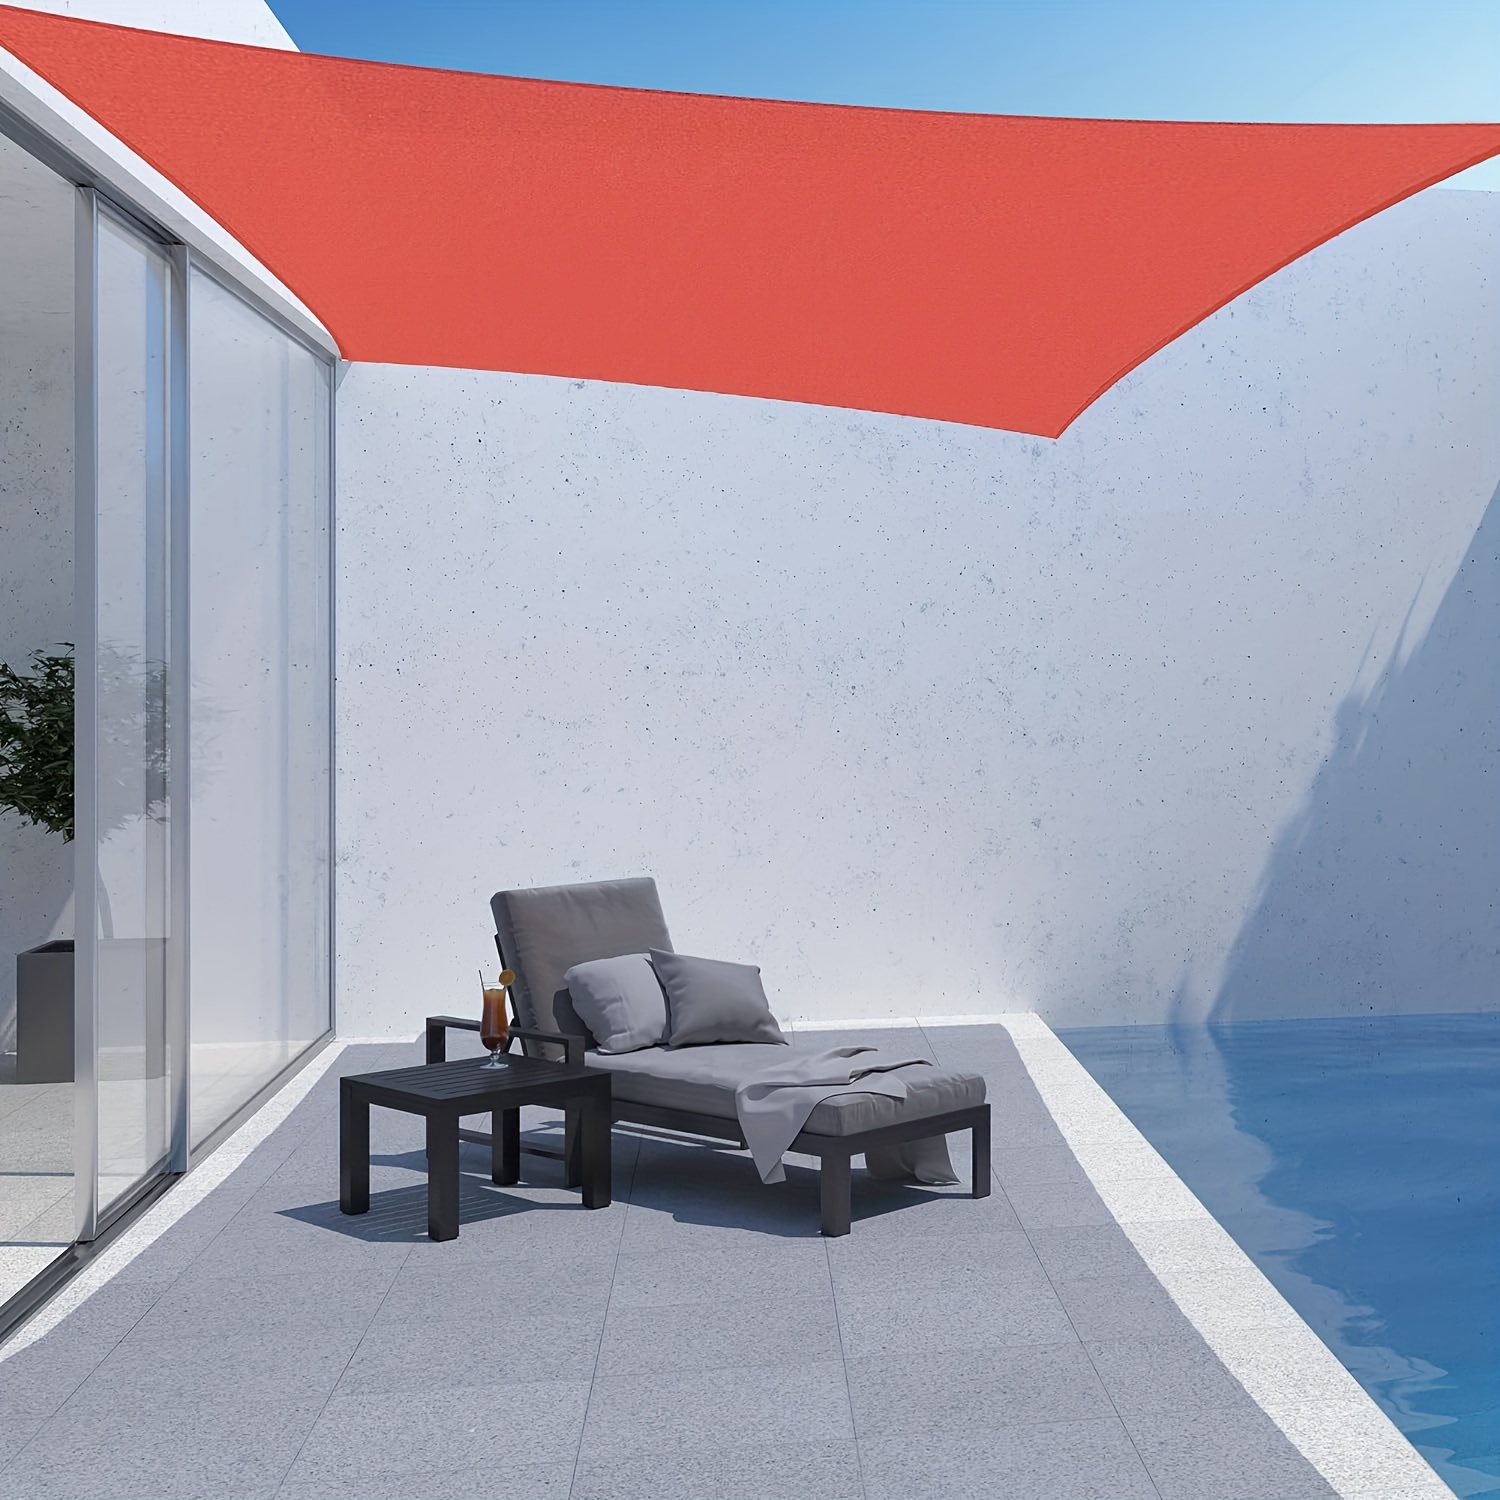 

Outdoor Sun Shade Rectangle 12' X 16' Uv Block Canopy For Patio Backyard Lawn Garden Outdoor Activities, Terra